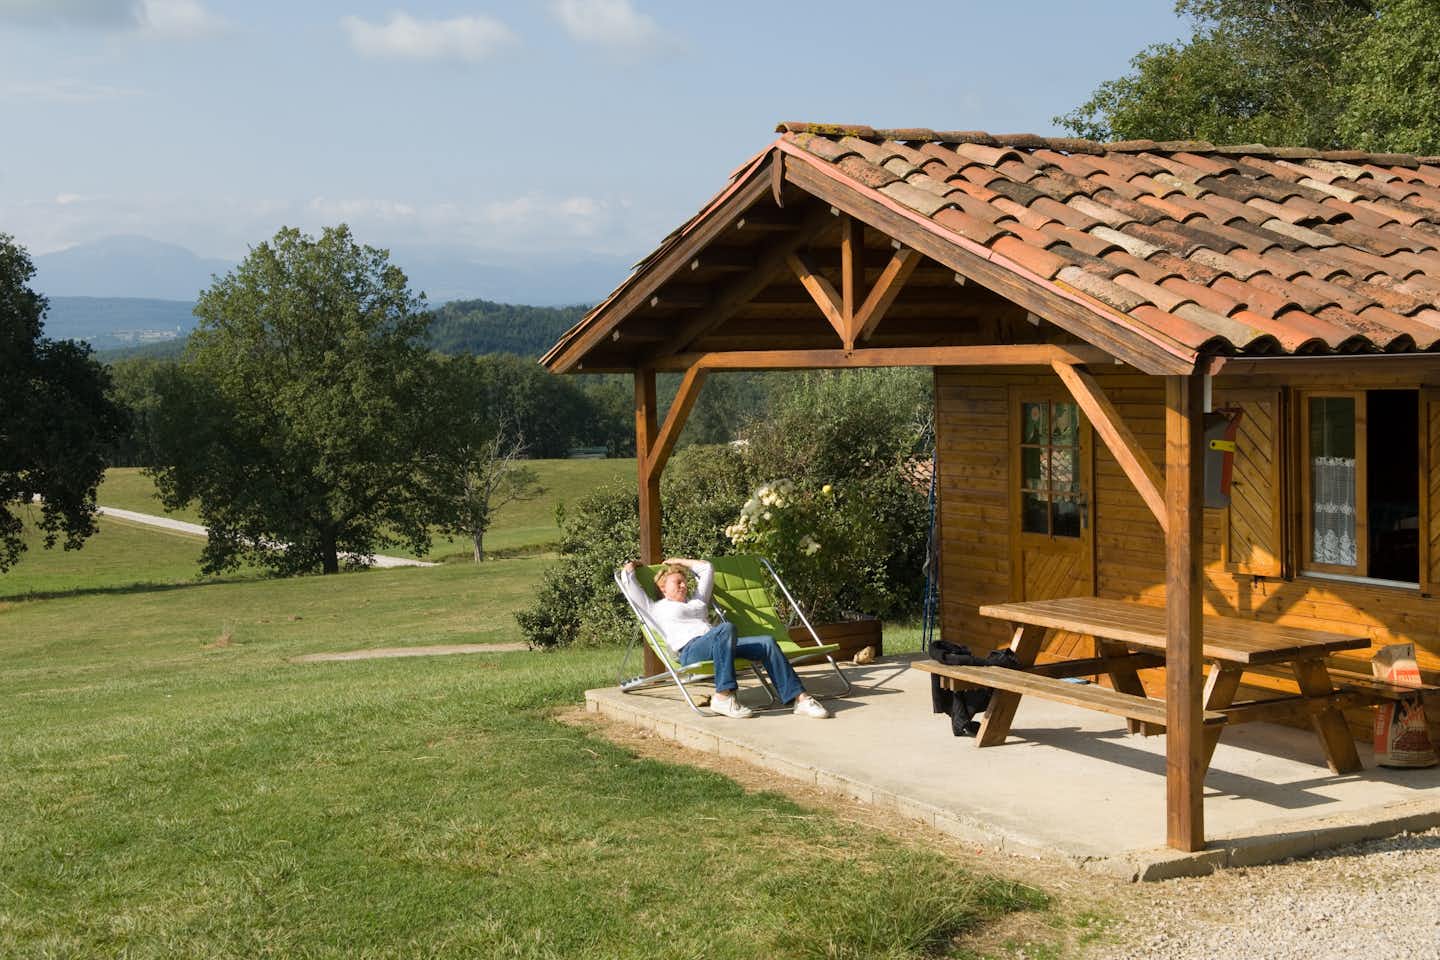 Camping de La Besse - Chalet mit terrasse im Grünen auf dem Campingplatz